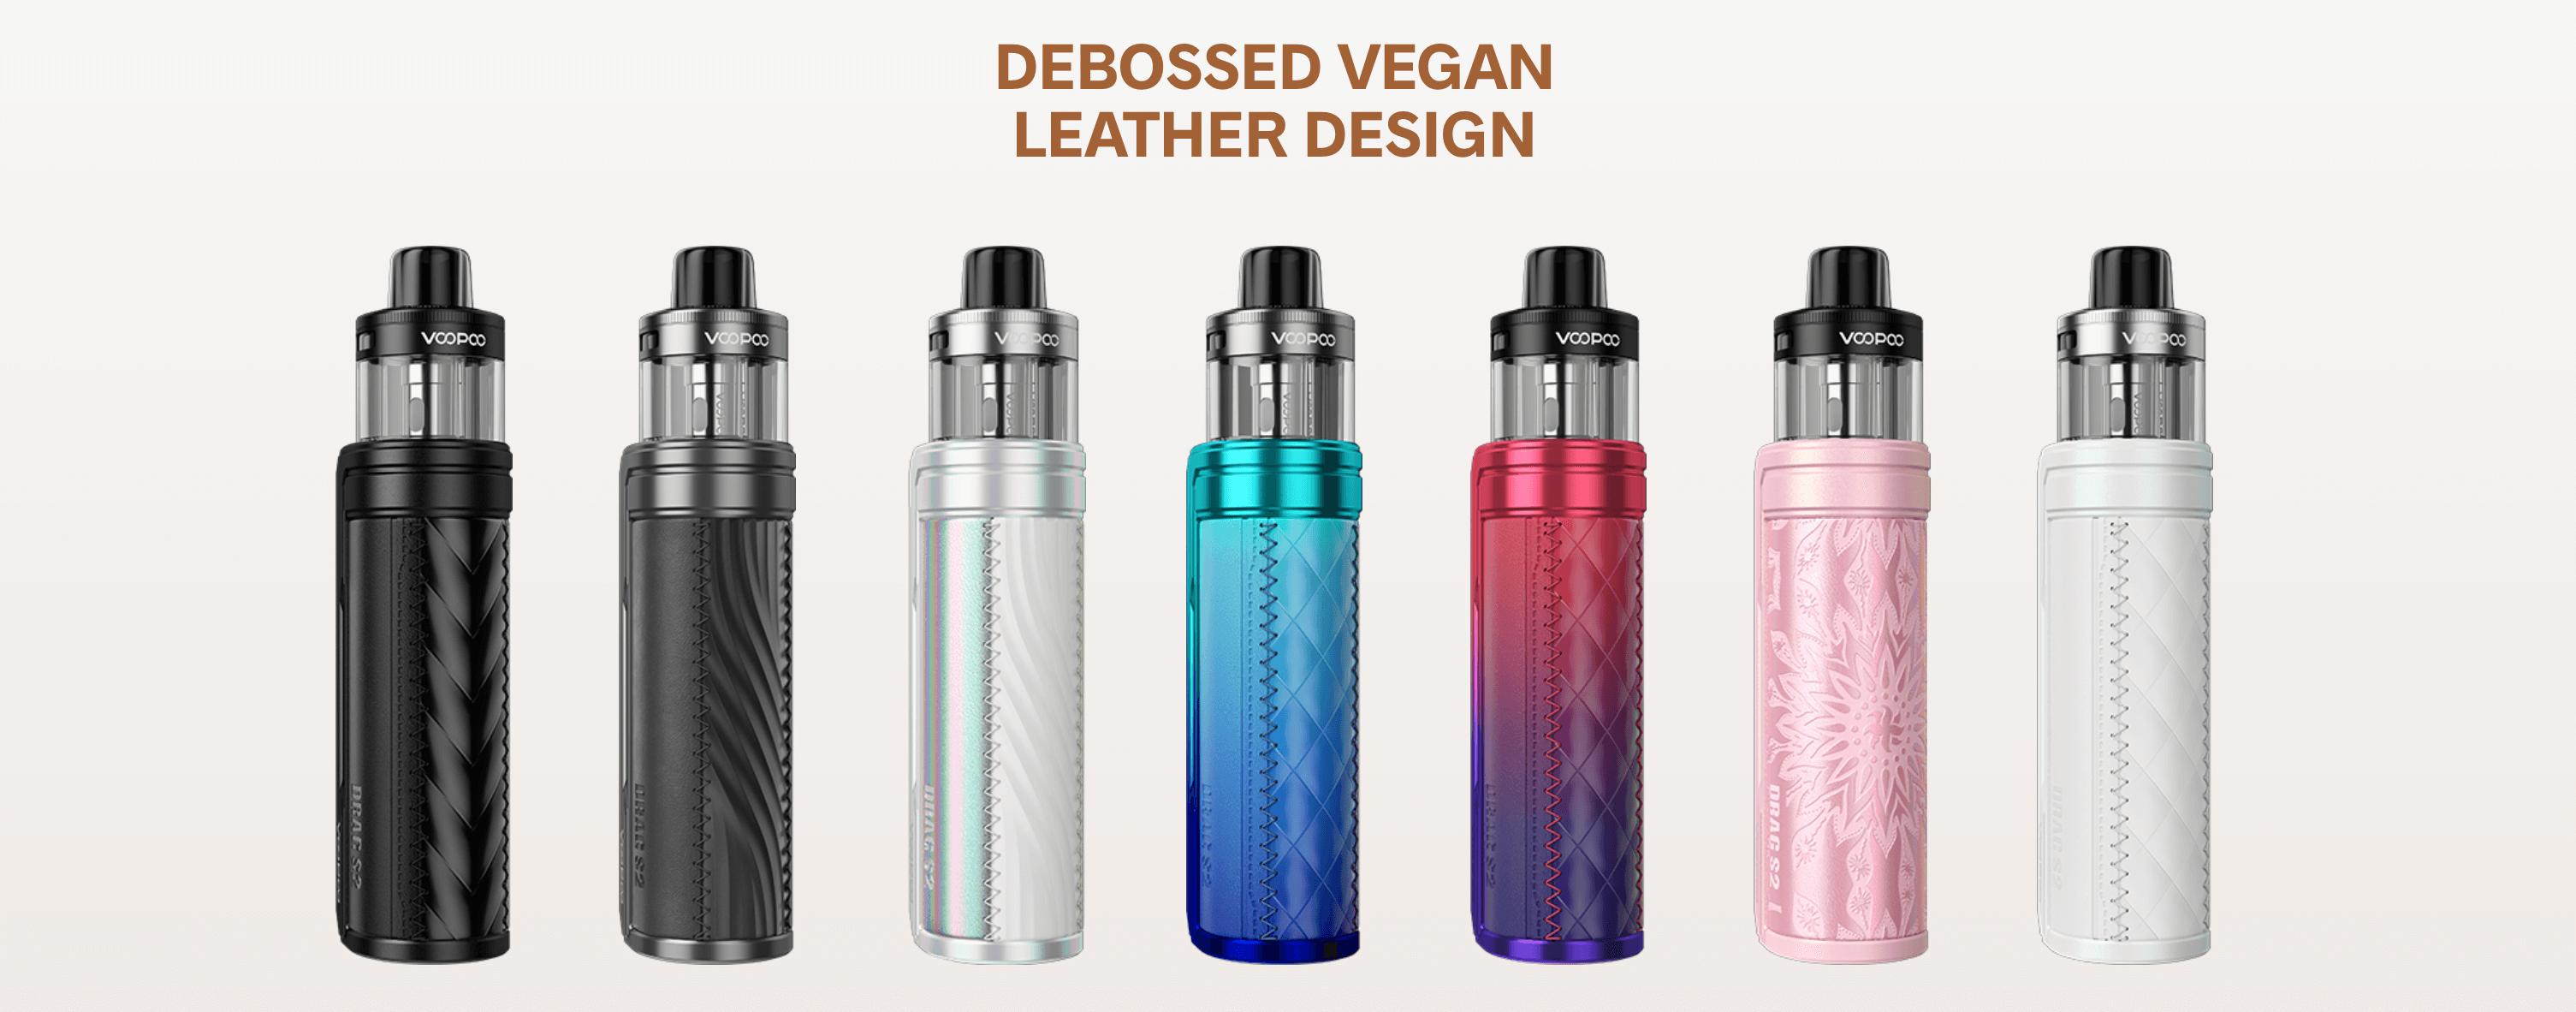 Voopoo Drag S2 - debossed vegan leather design